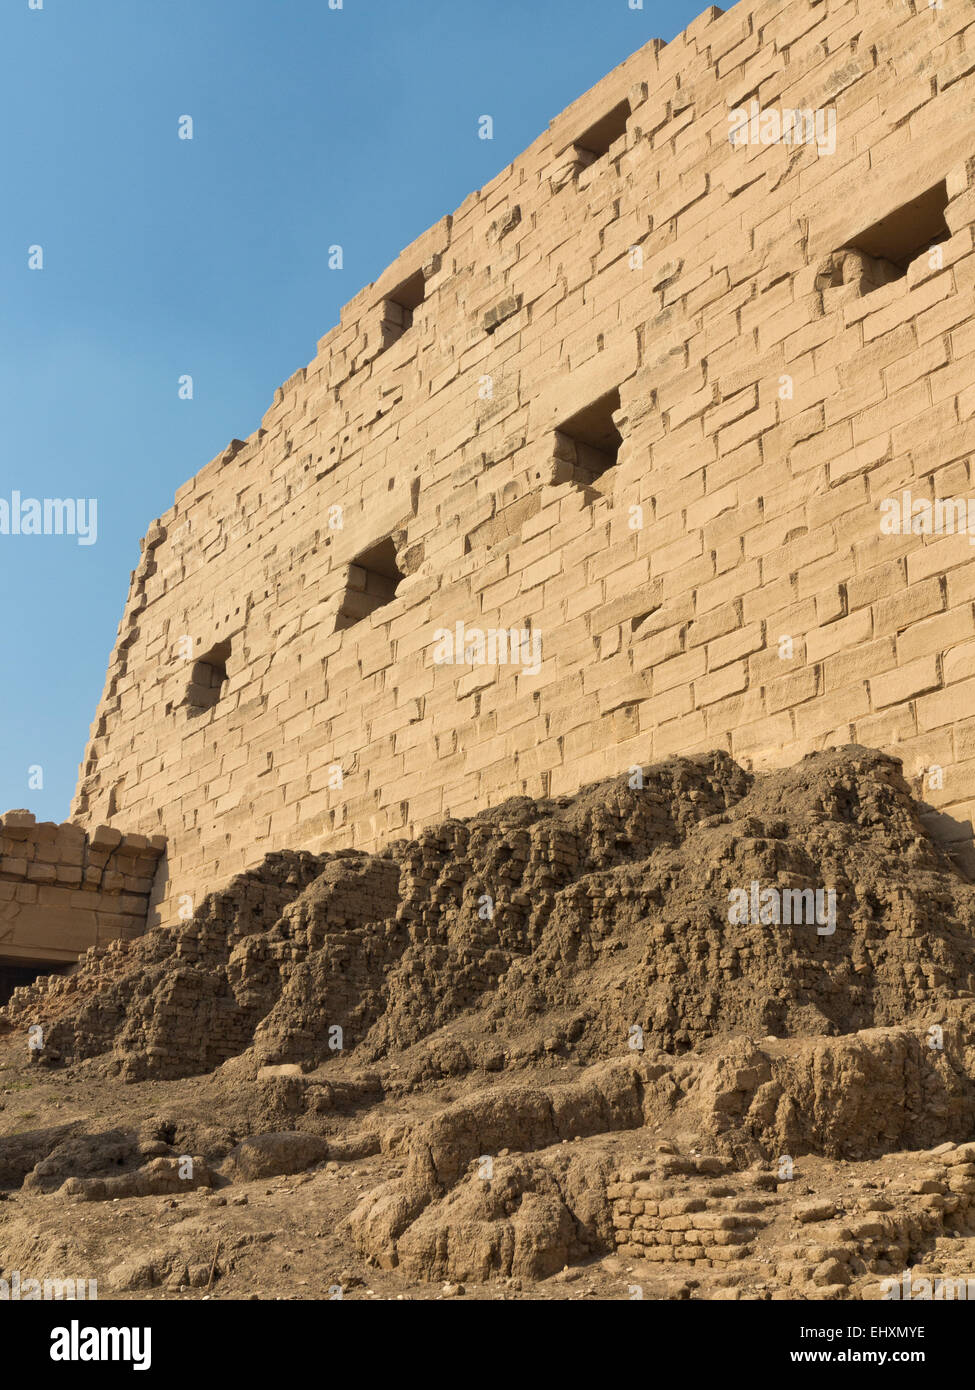 Des rampe derrière le Premier pylône du Temple d'Amon à Karnak, Louxor Égypte Banque D'Images